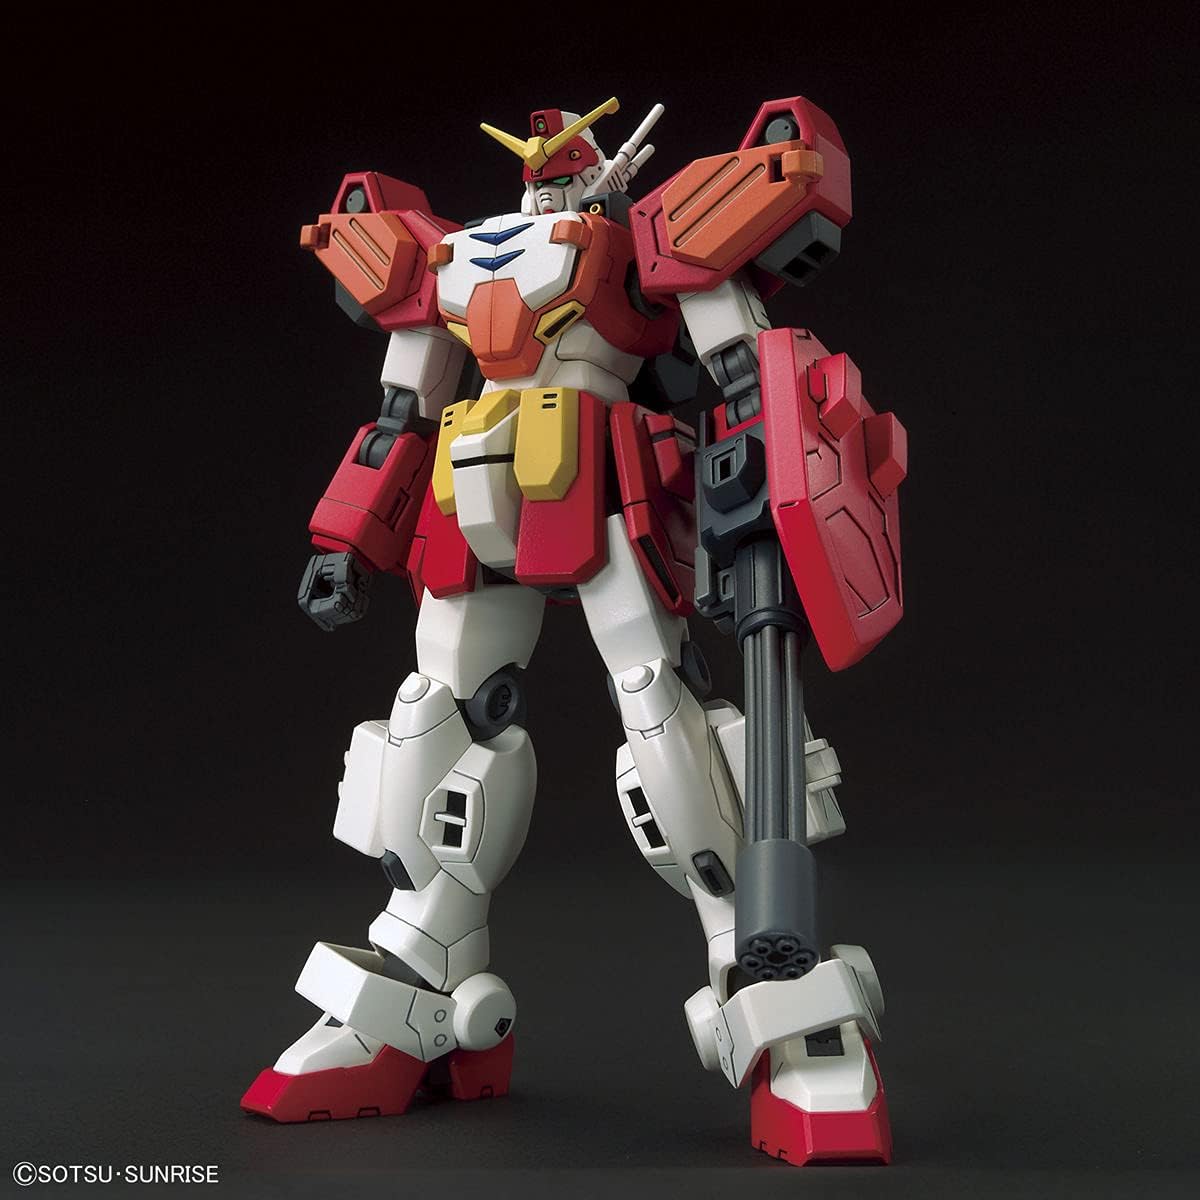 1/144 HGAC "Mobile Suit Gundam Wing" Gundam Heavyarms | animota